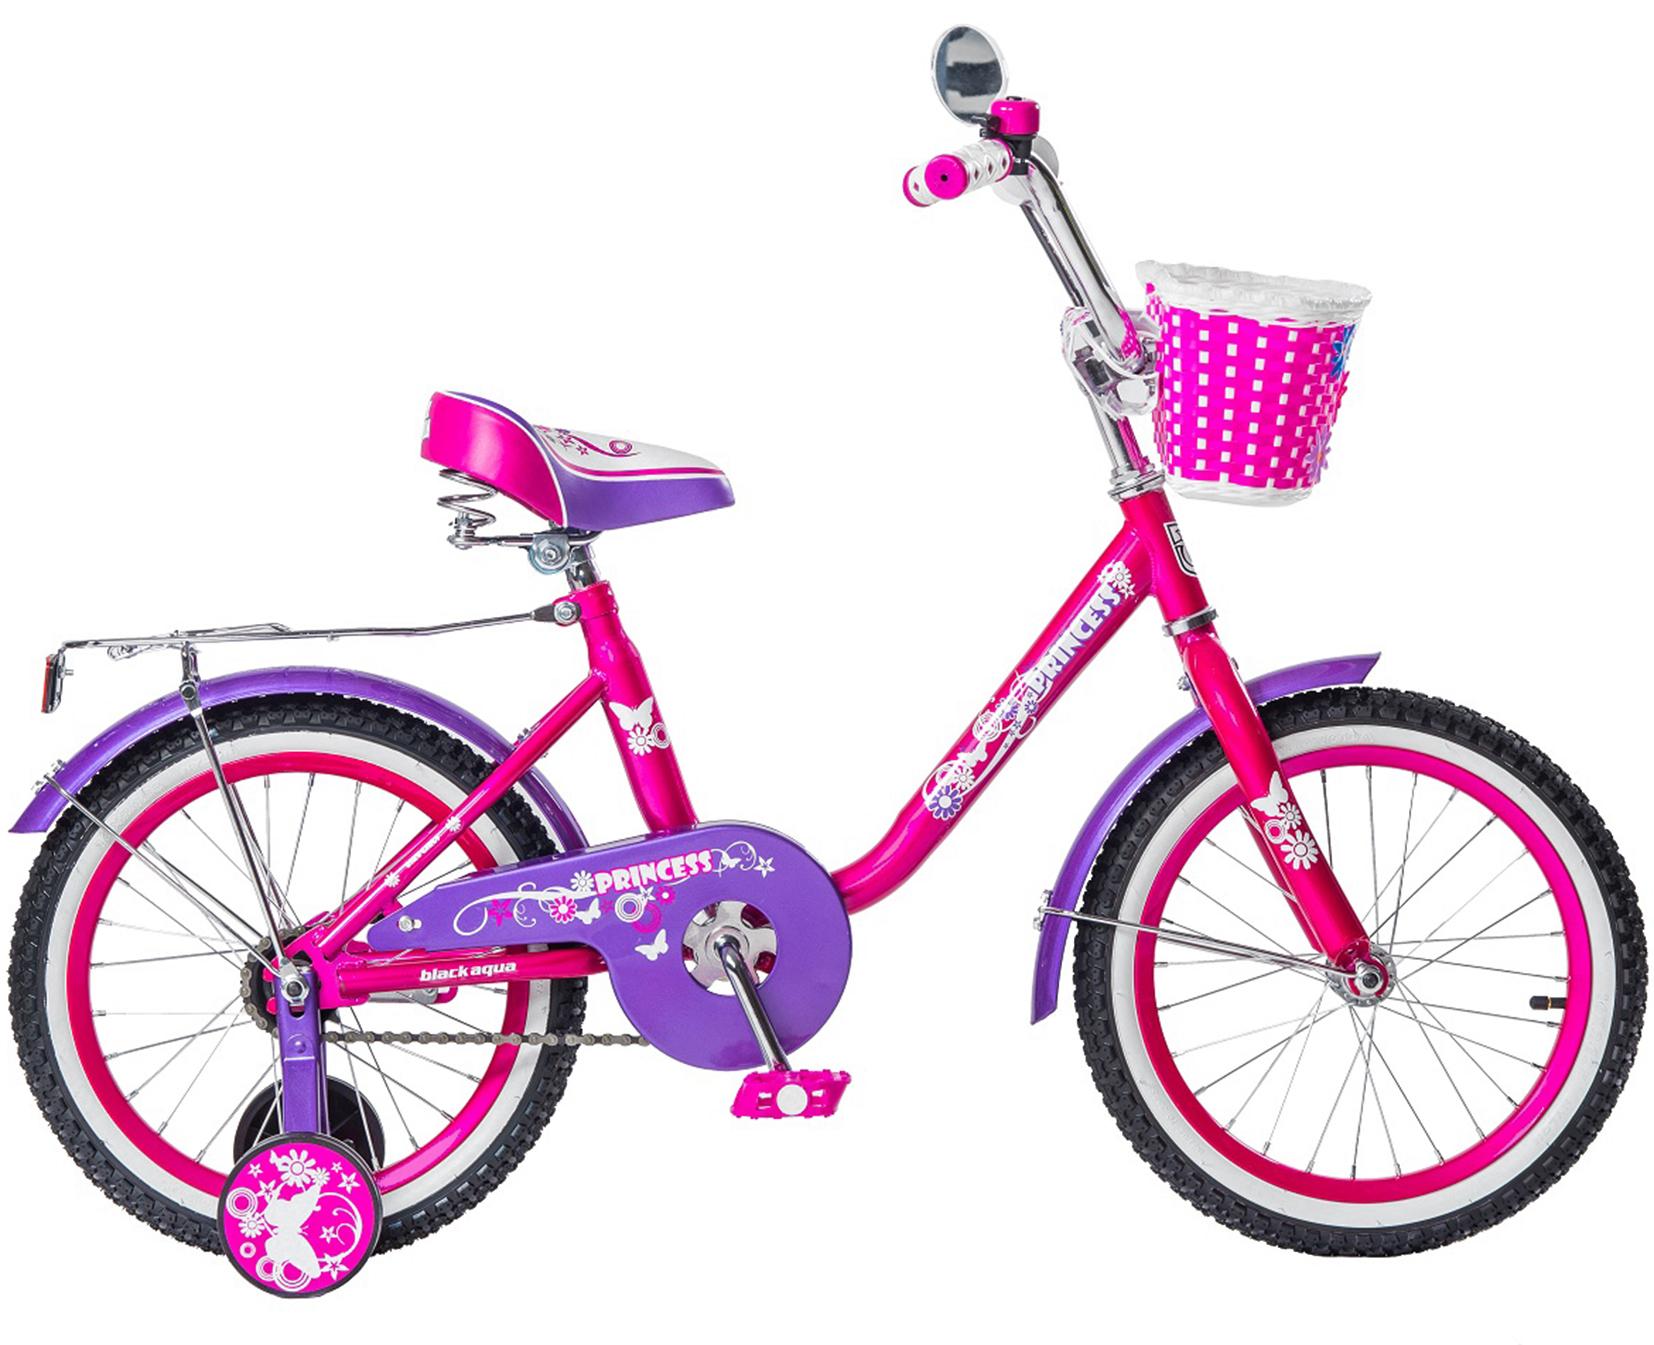 Велосипед Black Agua  Princess 16",1s(со светящ.колесами,розовый-белый)KG1602